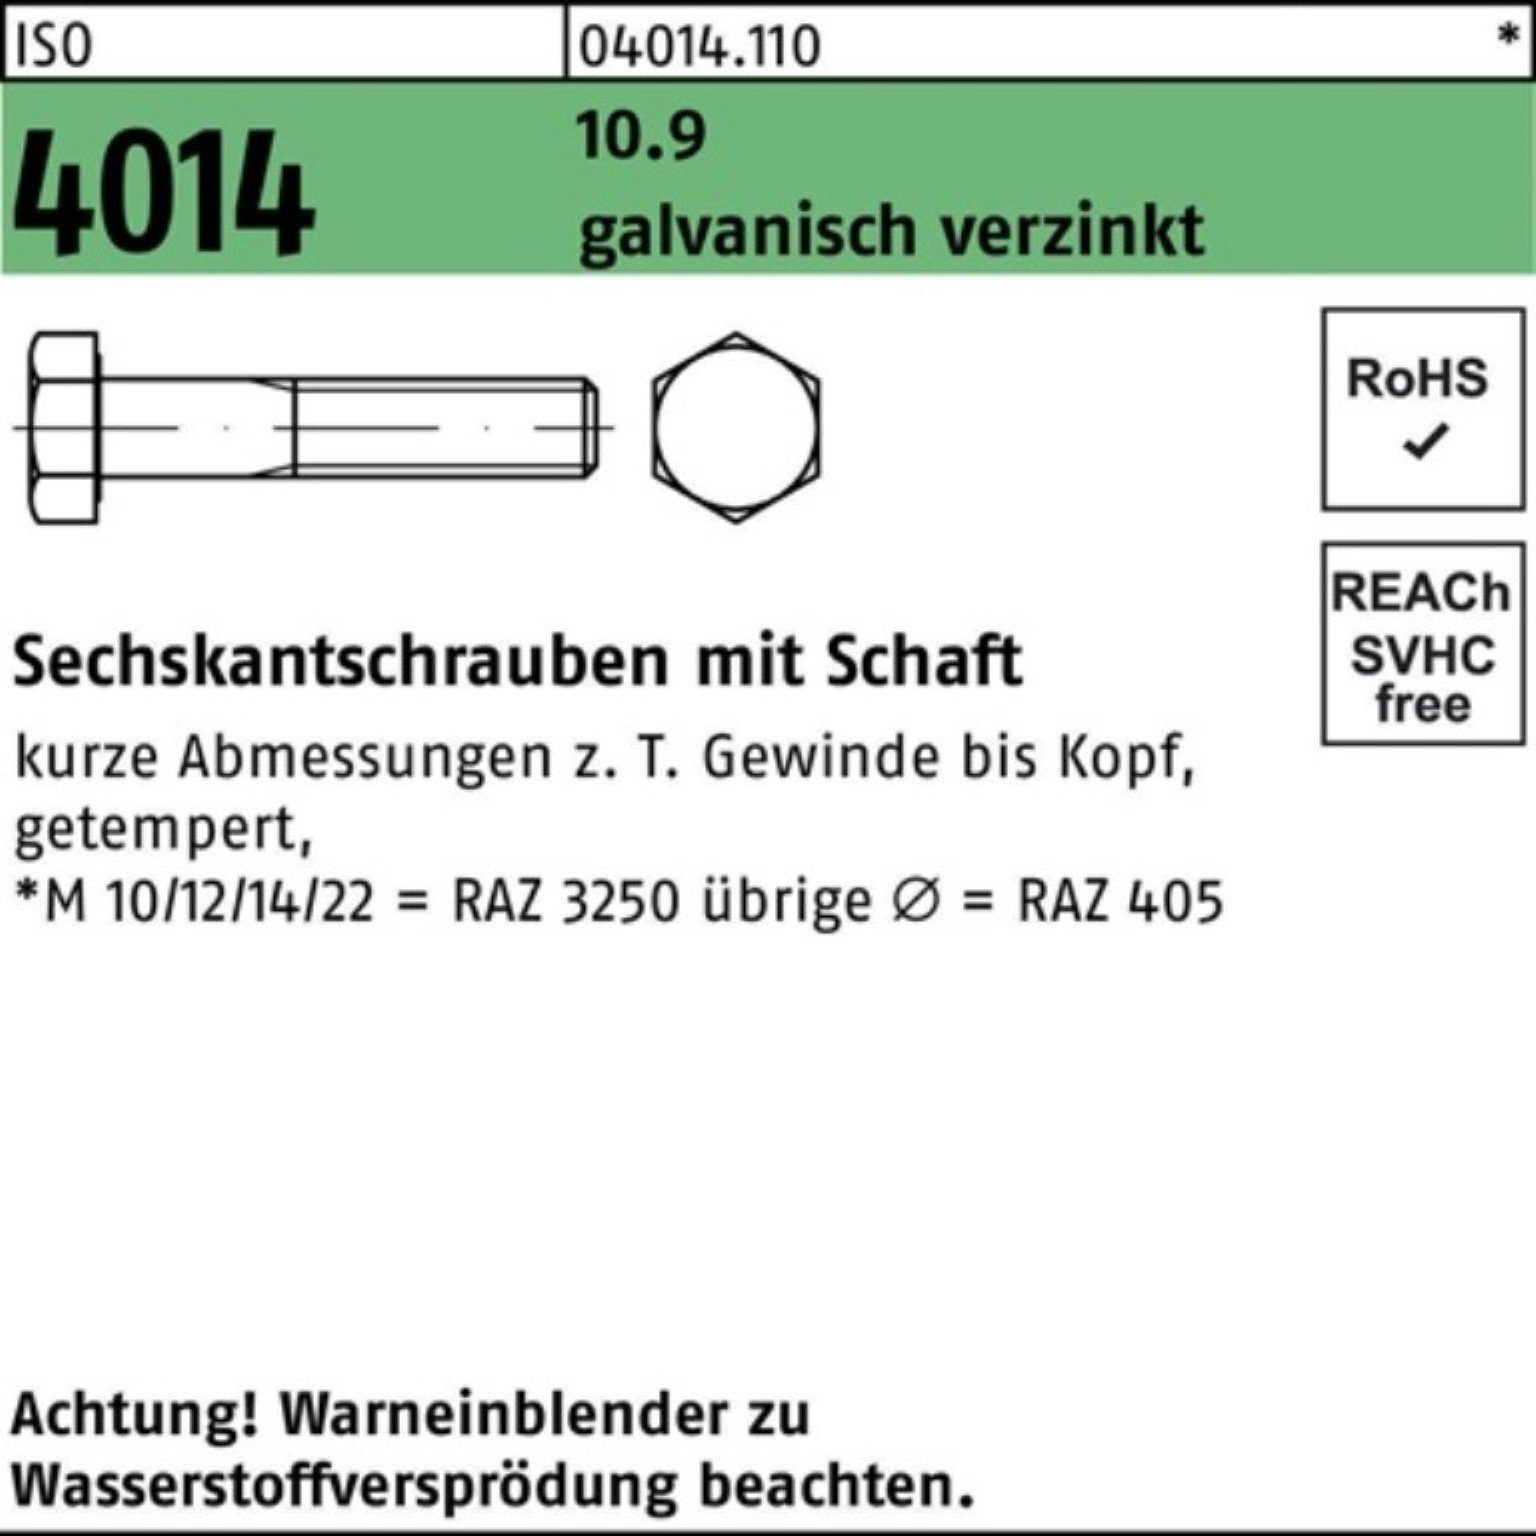 Bufab Sechskantschraube 100er ISO 80 10.9 4014 M18x Sechskantschraube Pack Schaft 2 galv.verz